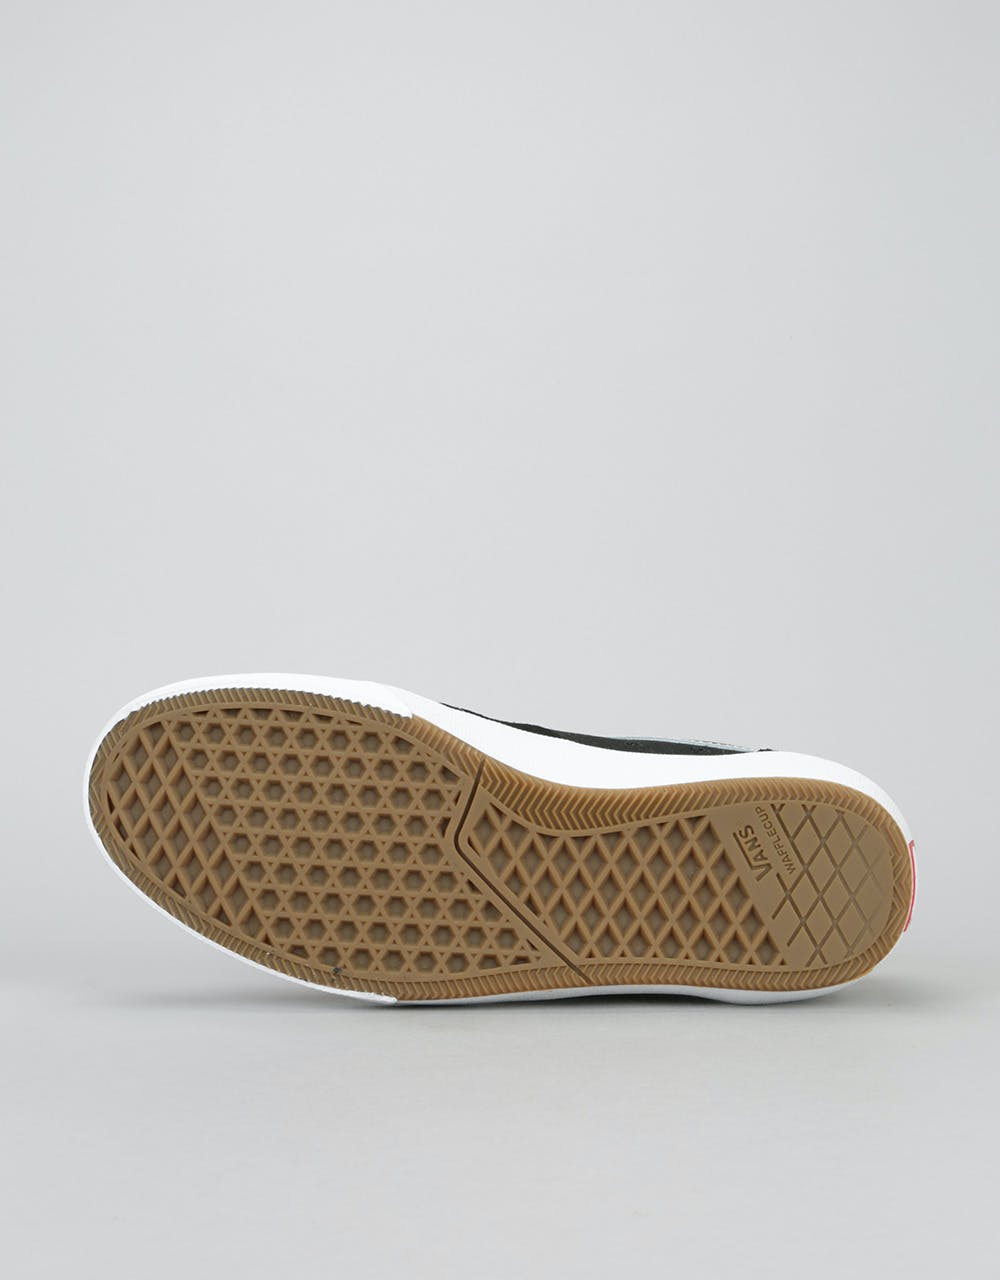 Vans Gilbert Crockett 2 Pro Skate Shoes - Black/White